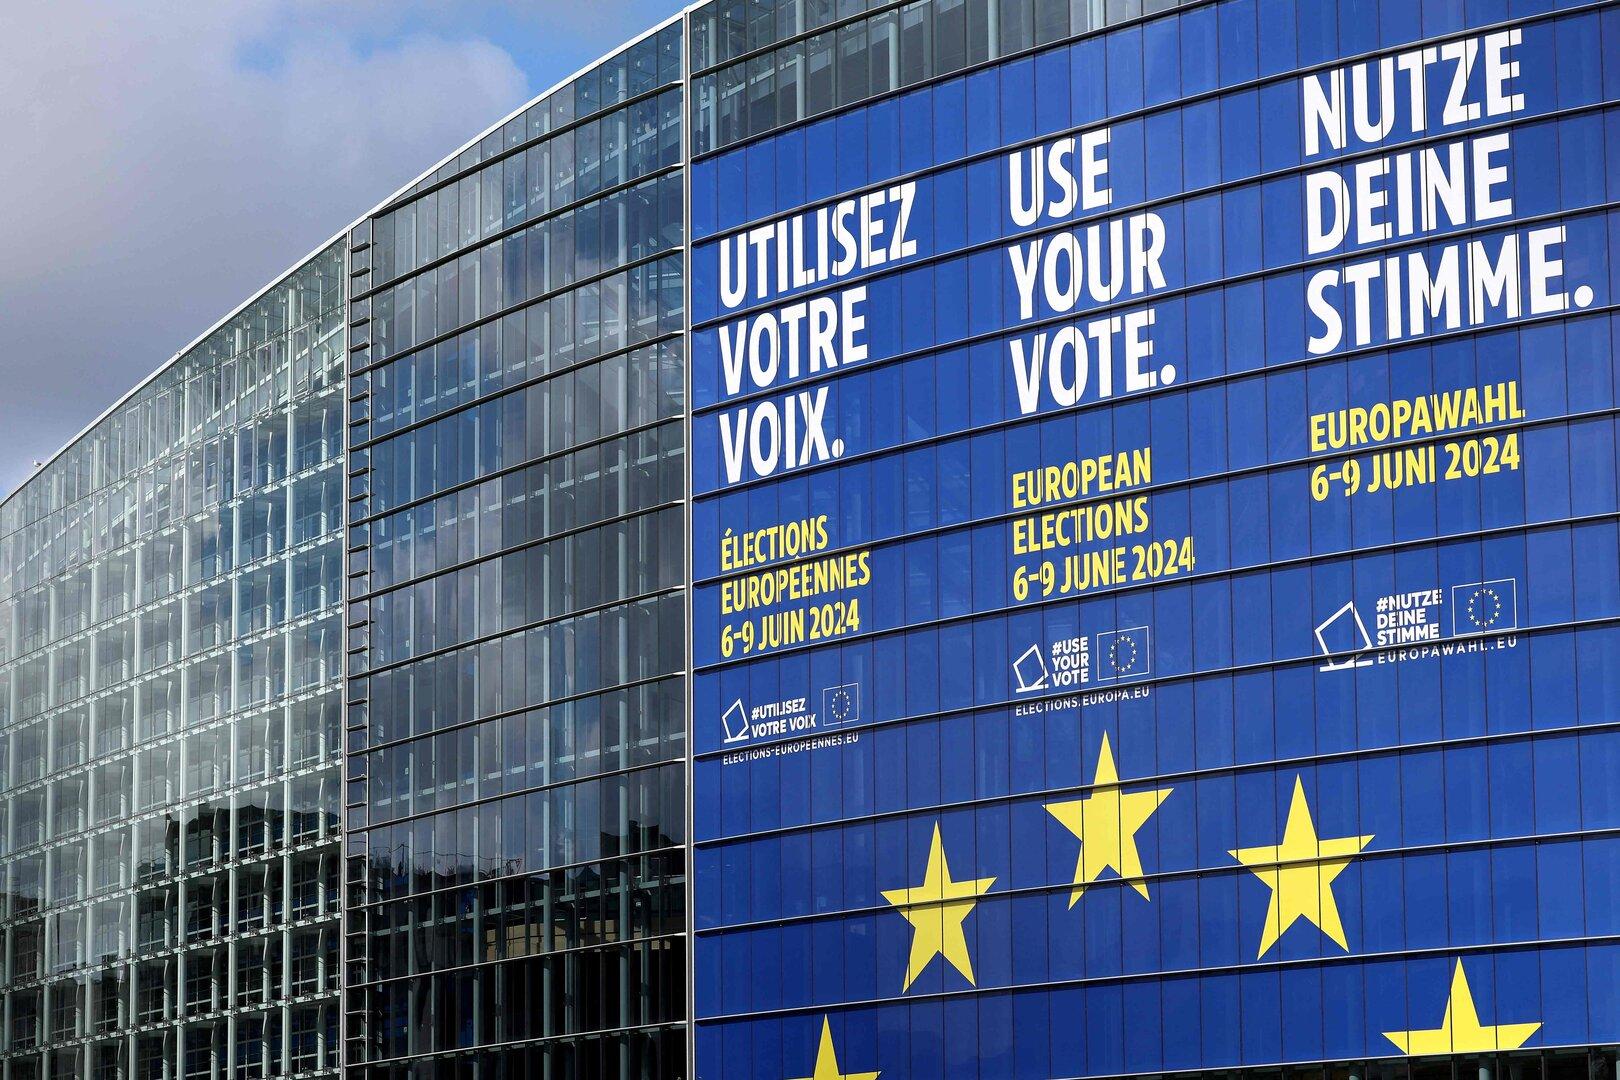 Wer steuert Europa – und wohin? Die wichtigsten Fragen zur EU-Wahl 2024